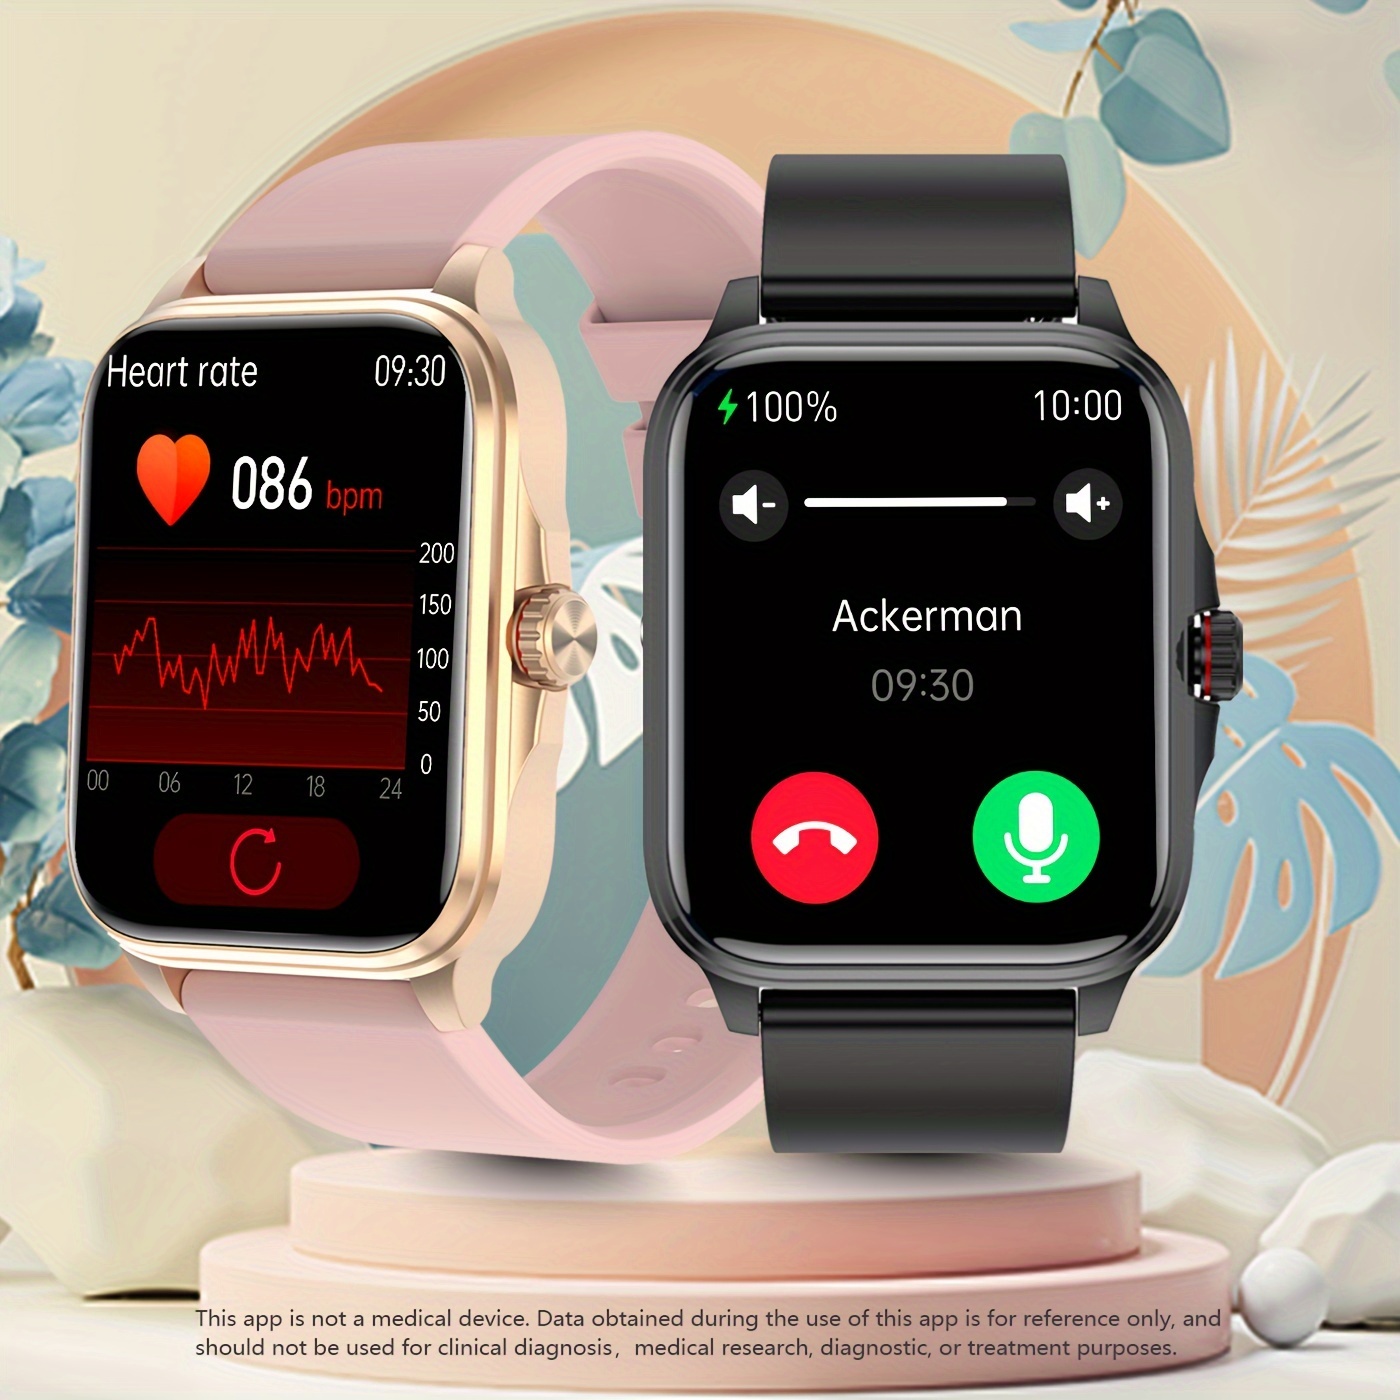 Novo relógio inteligente Smartwatch Homem e Mulher frequência